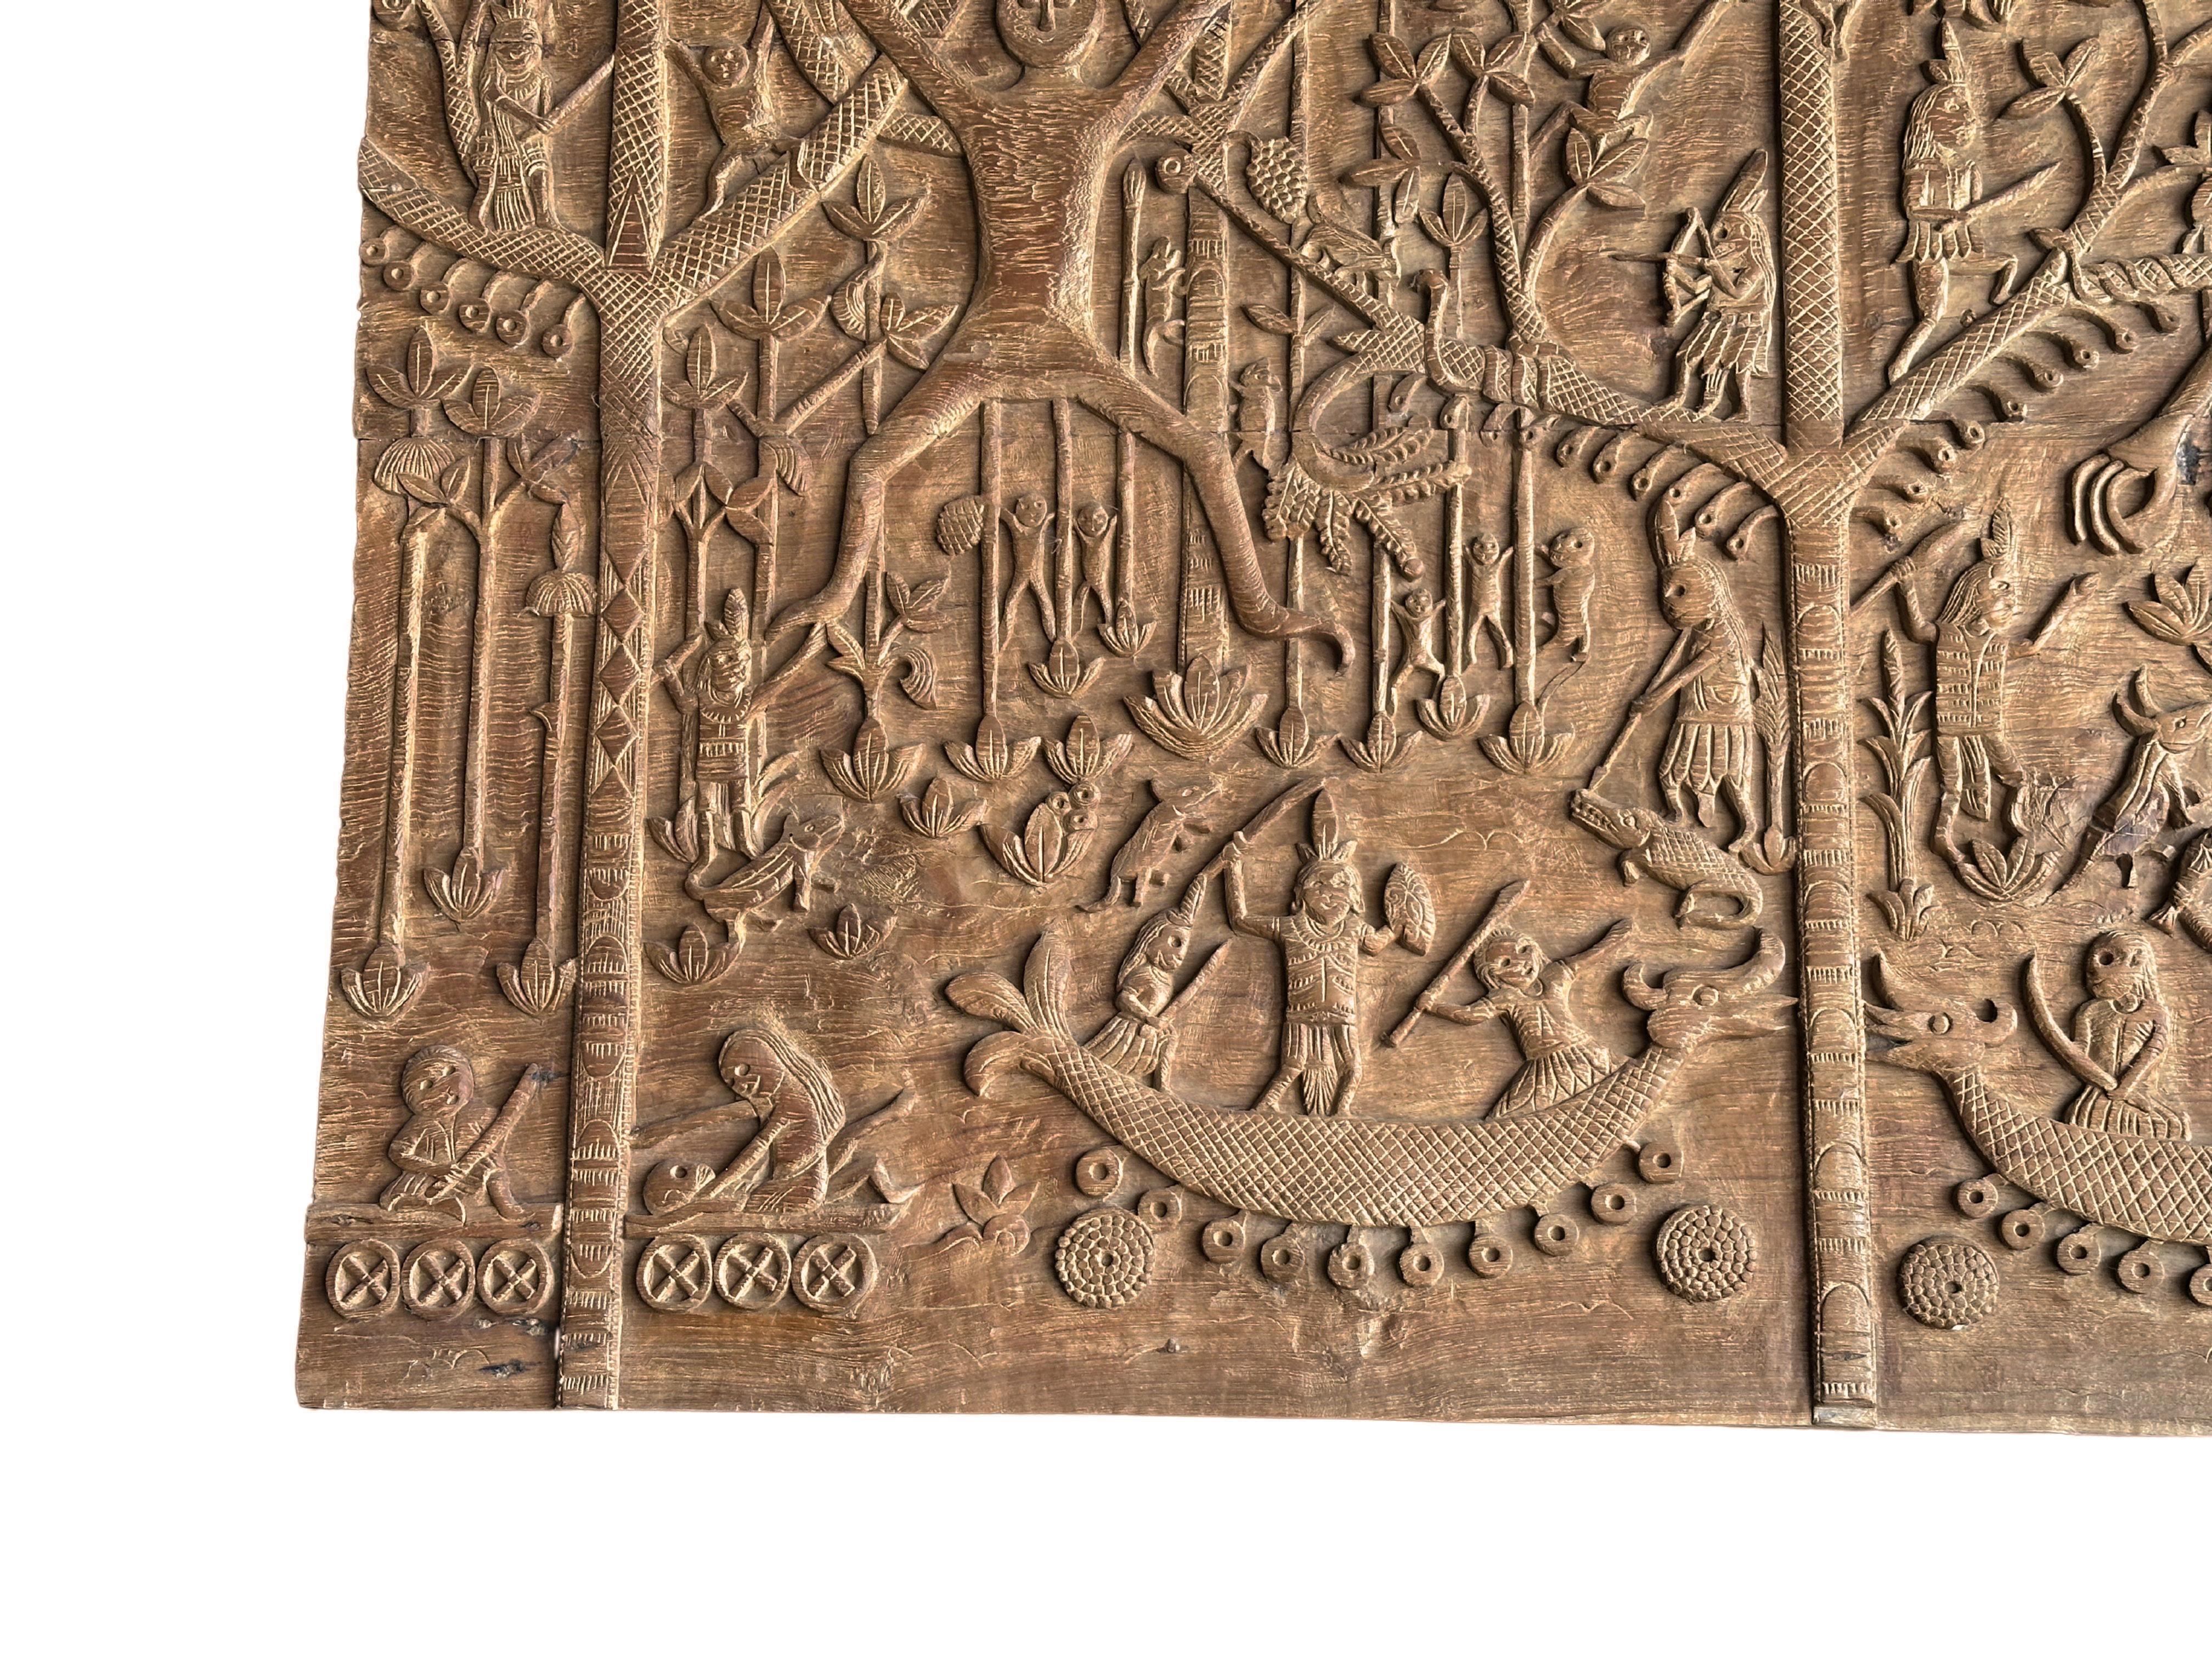 Hand-Carved Teak Wood Sculpture Panel Depicting Dayak Mythology For Sale 1